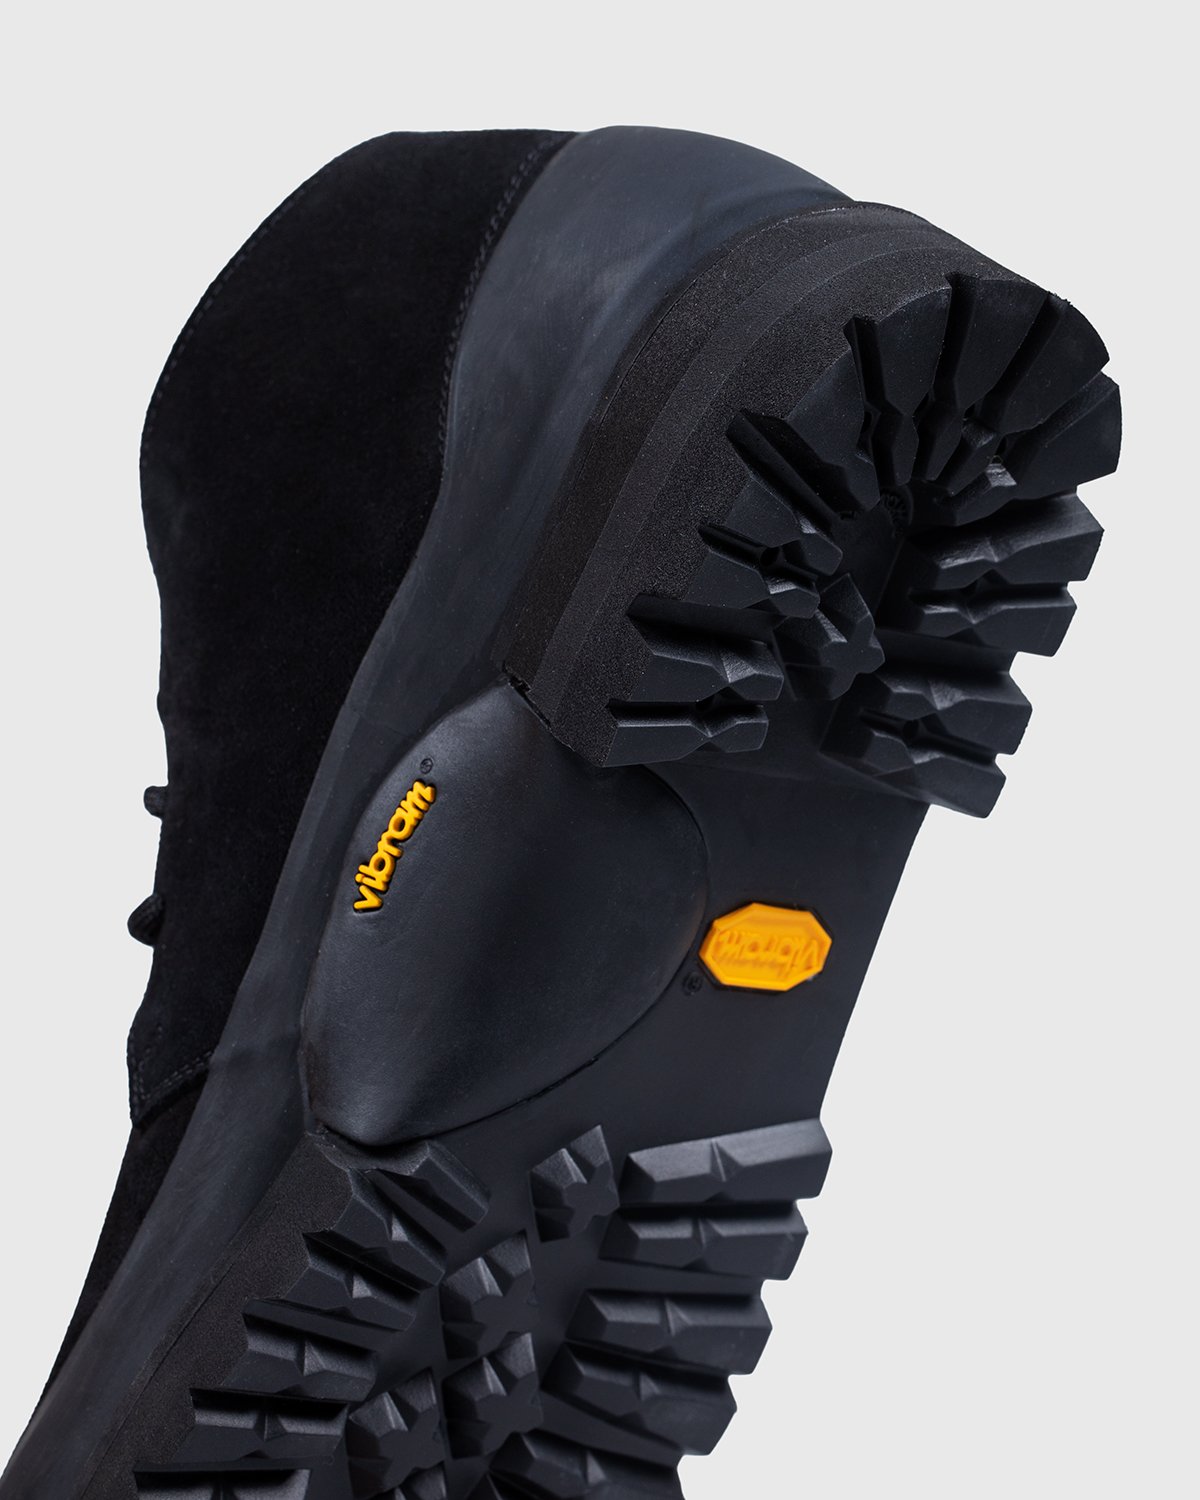 Diemme - Asiago Black Suede - Footwear - Black - Image 5